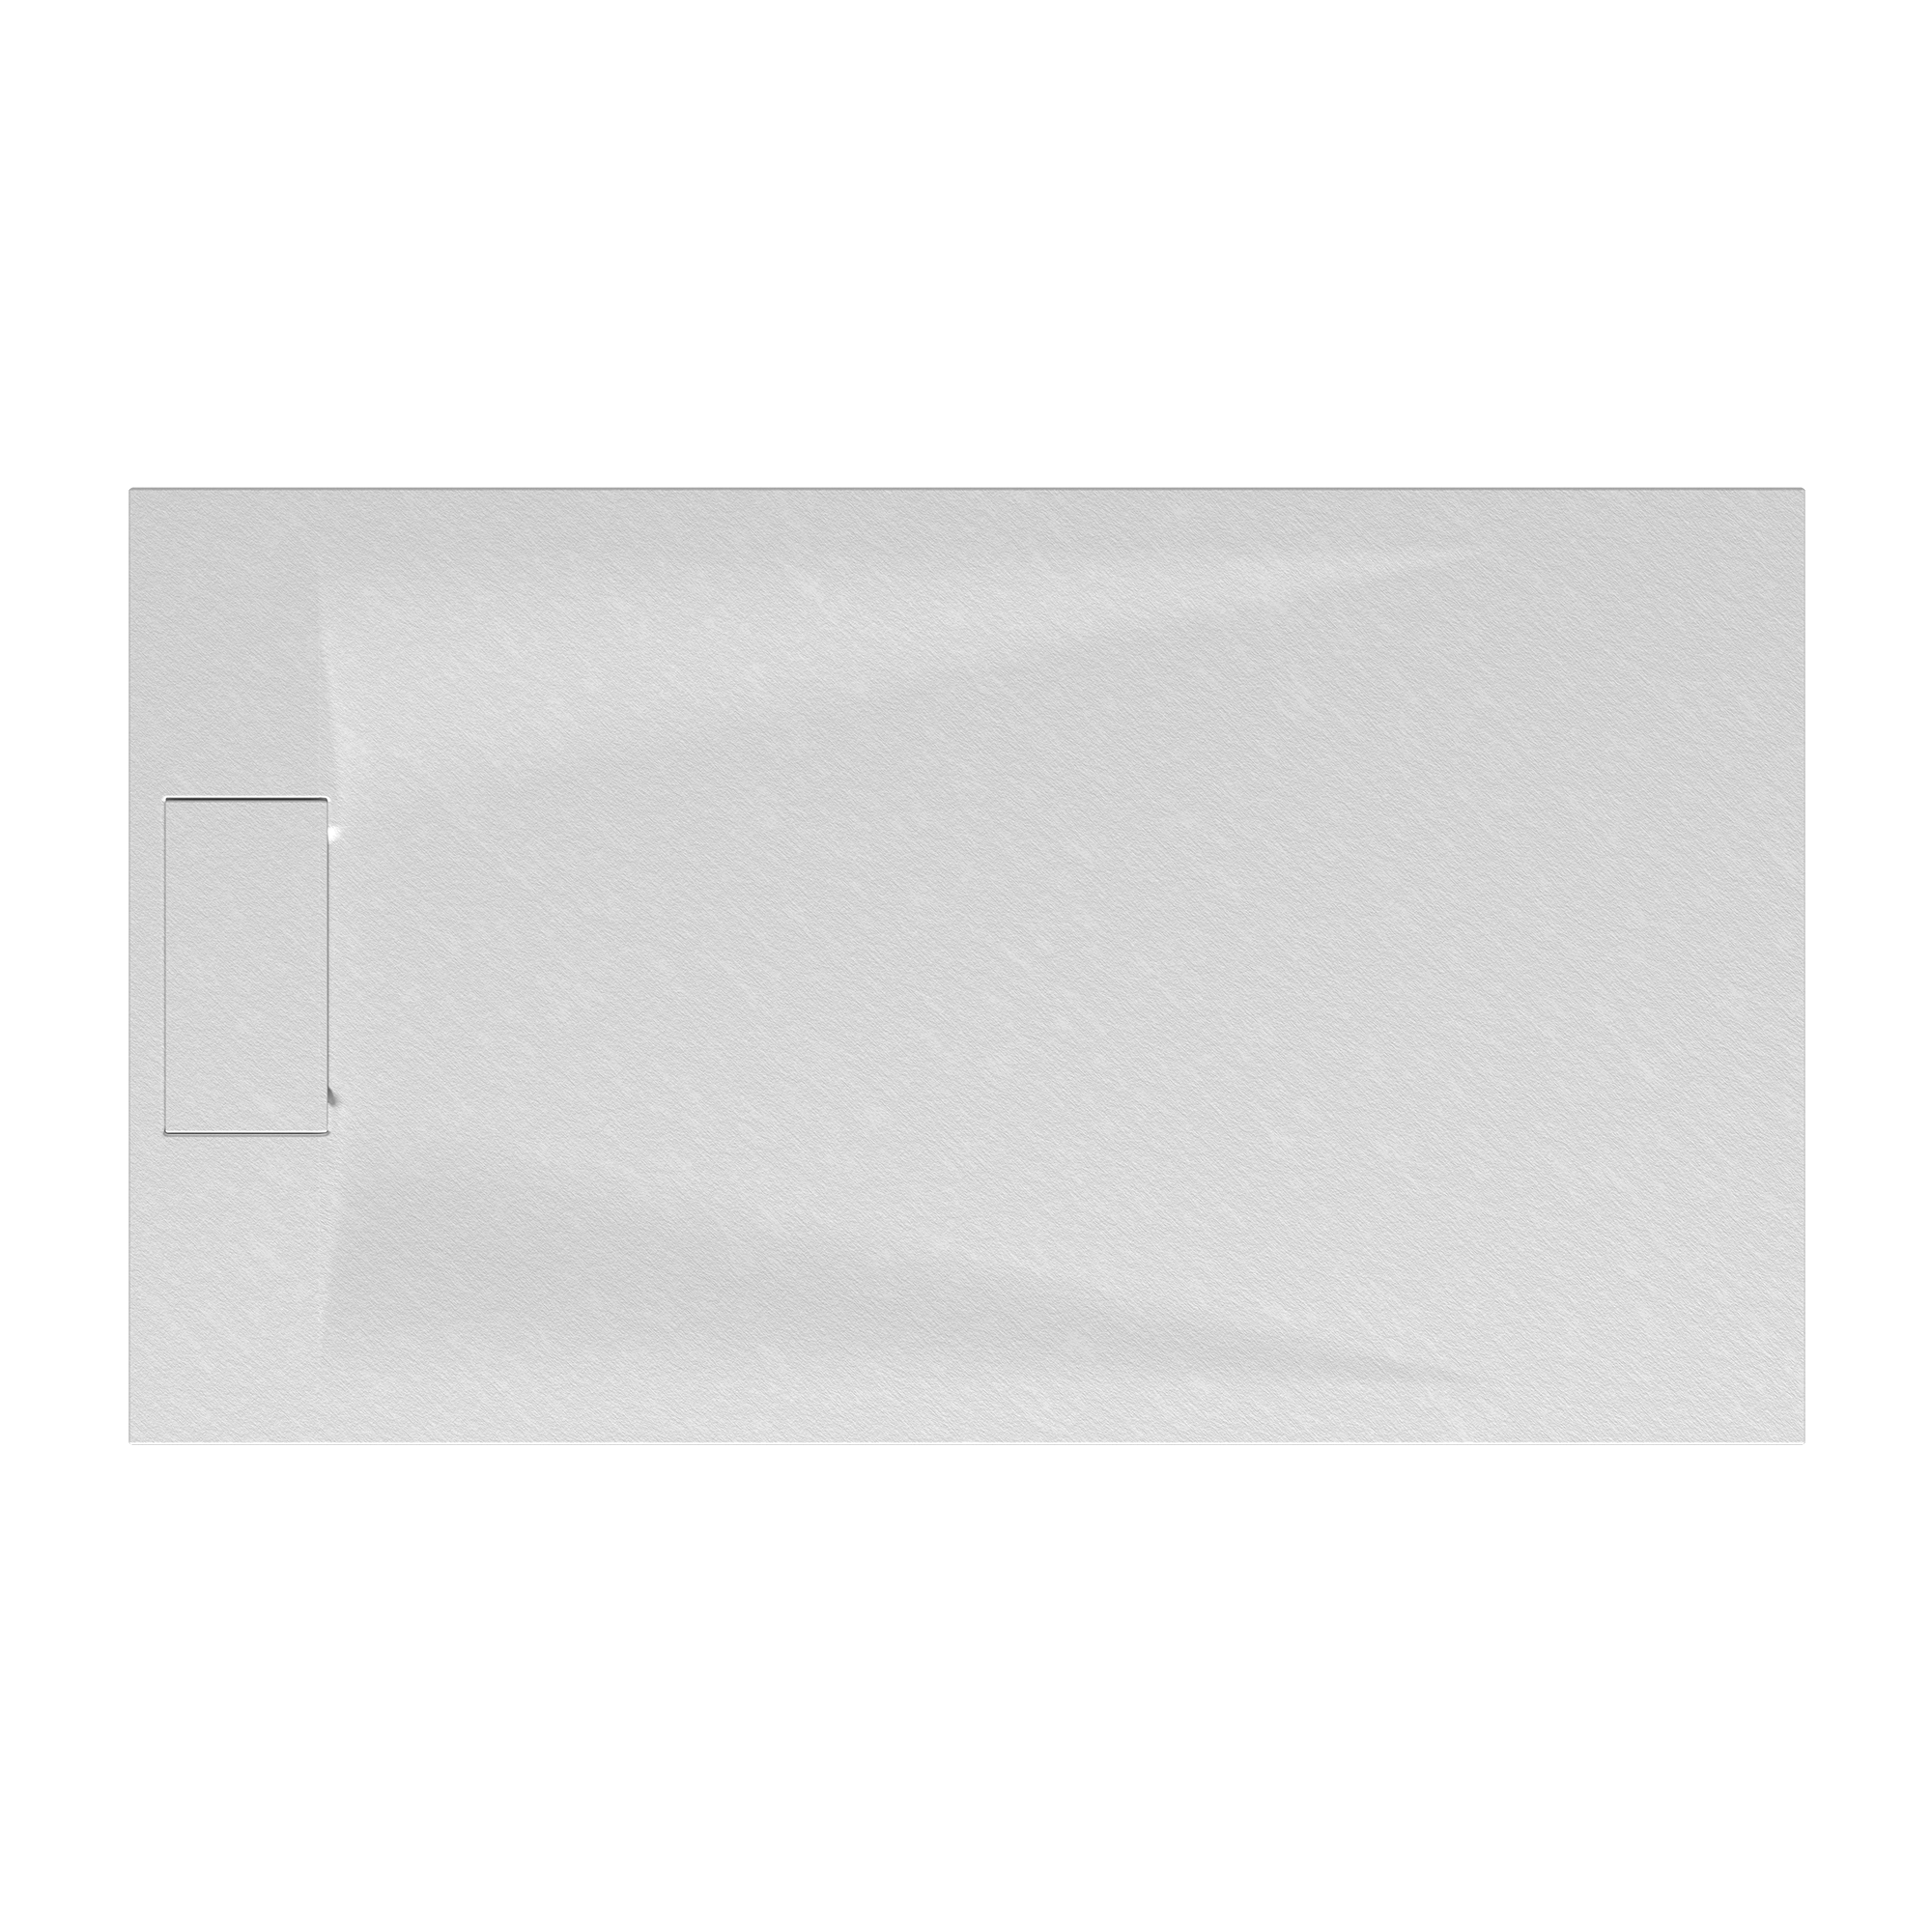 Duschwanne 'Lite Line' Steinoptik weiß 90 x 160 cm + product picture